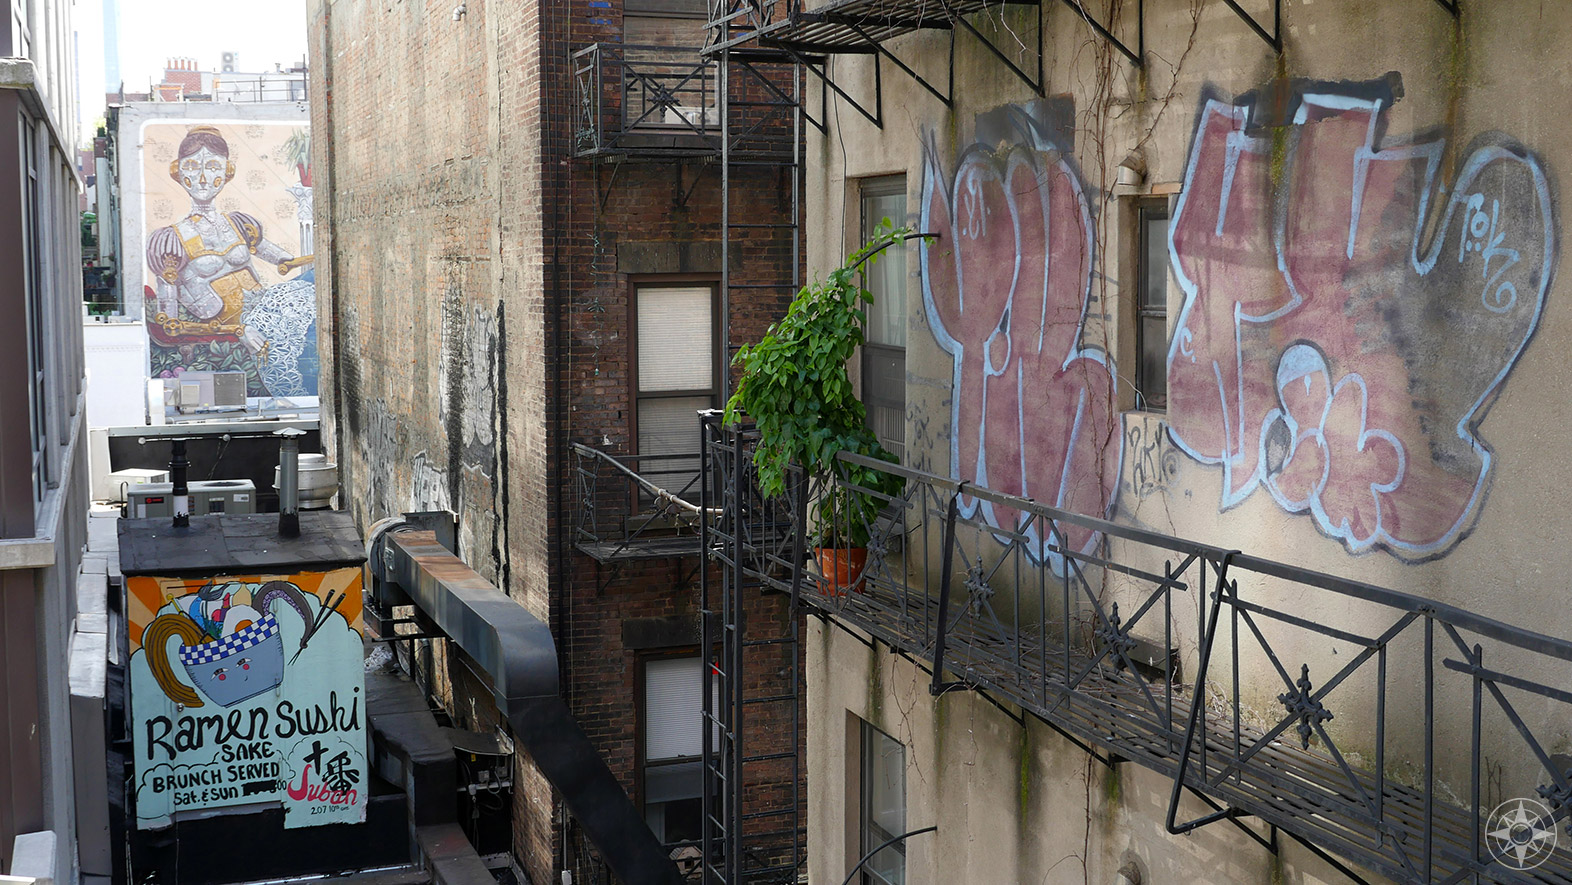 Seen from the High Line: Ramen, female robot, street art, fire escape, plant.